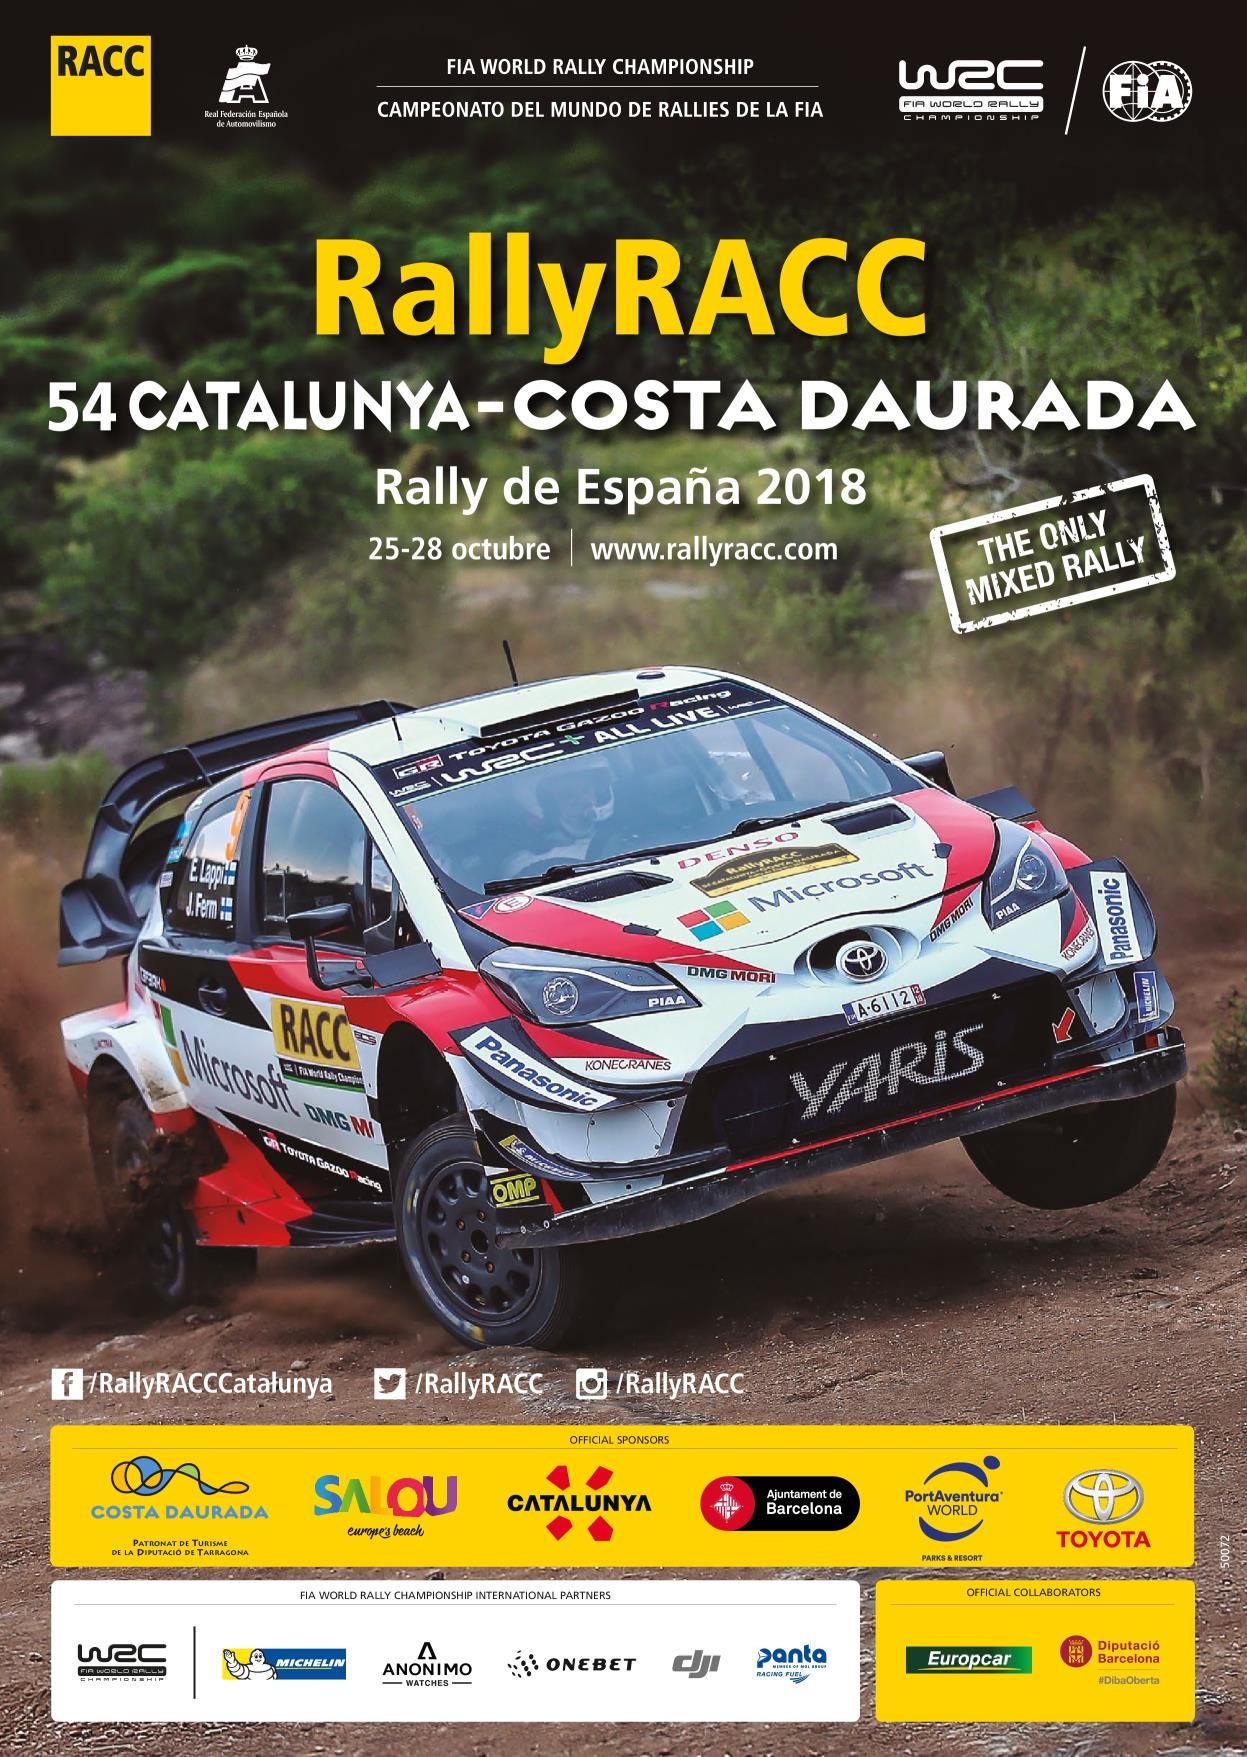 Toyota España Official Sponsor de la 54 edición del RallyRACC